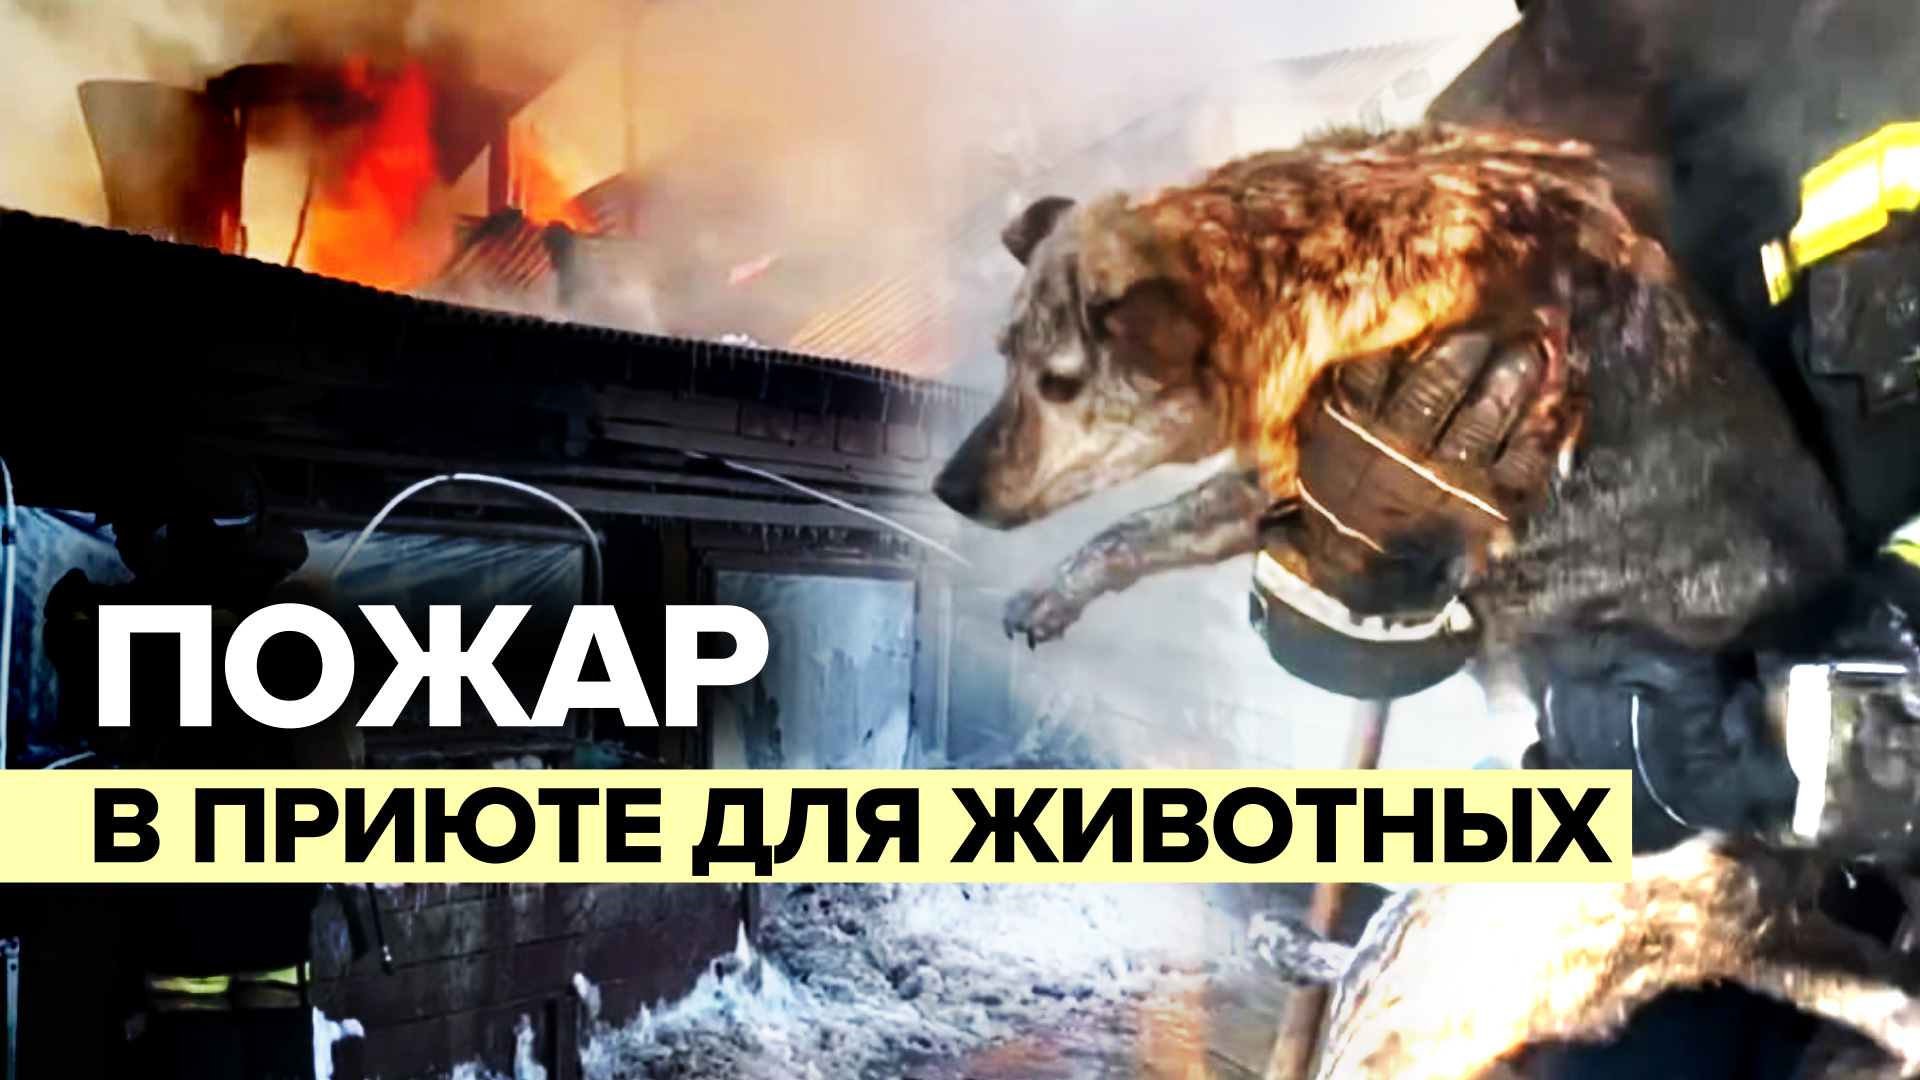 МЧС России ликвидирует пожар в приюте для животных на Сахалине